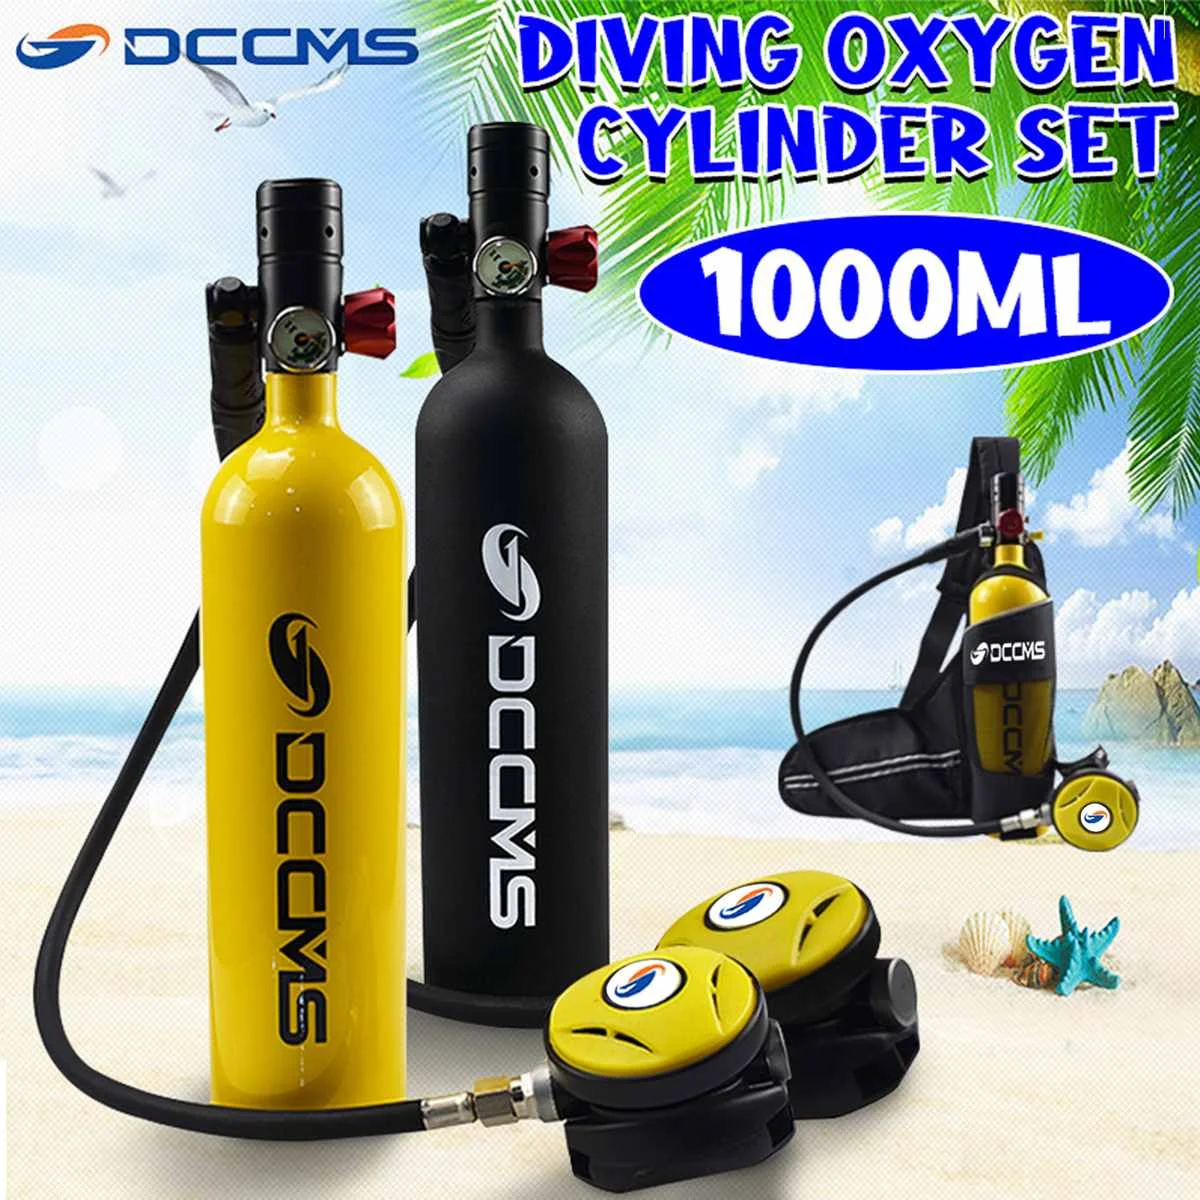 

DCCMS DS-410 1L Portable Scuba Diving Tank Oxygen Divers Spare Equipment Leisure Diving Mini Scuba Tank for Snorkeling Breath